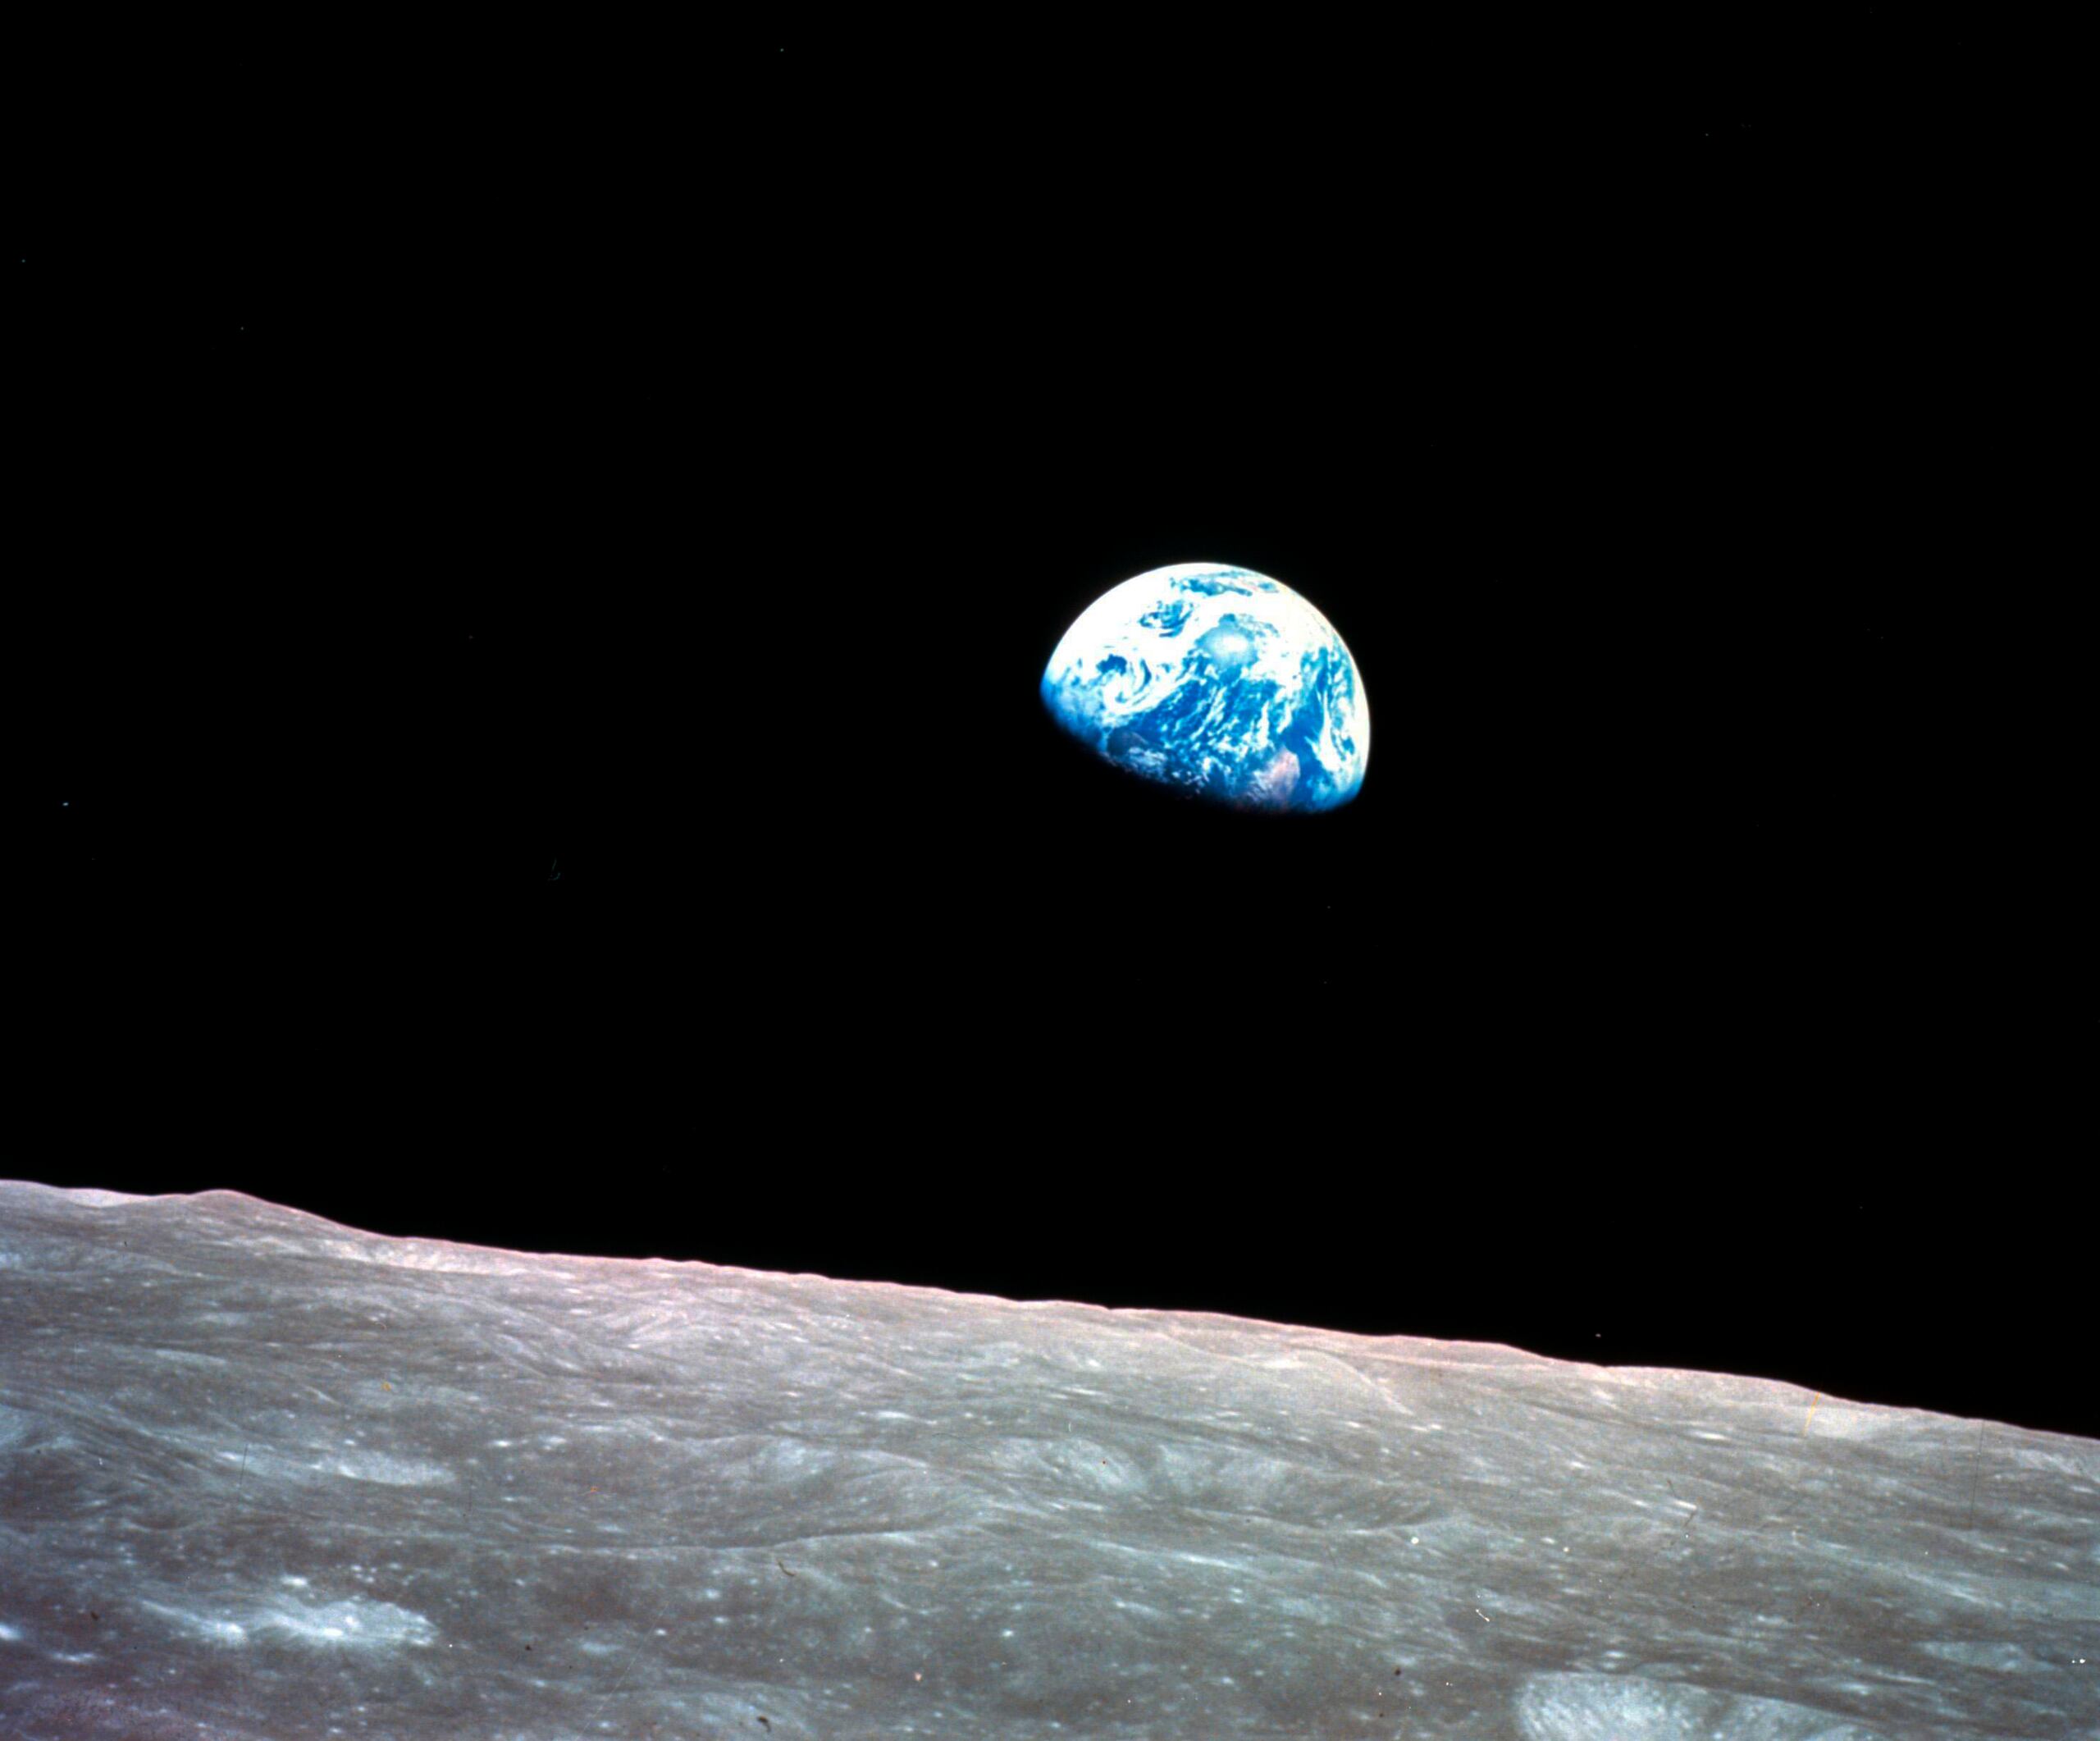 A la imagen tomada por Anders desde el Apolo 8 se le atribuye haber desencadenado el movimiento ecologista mundial.